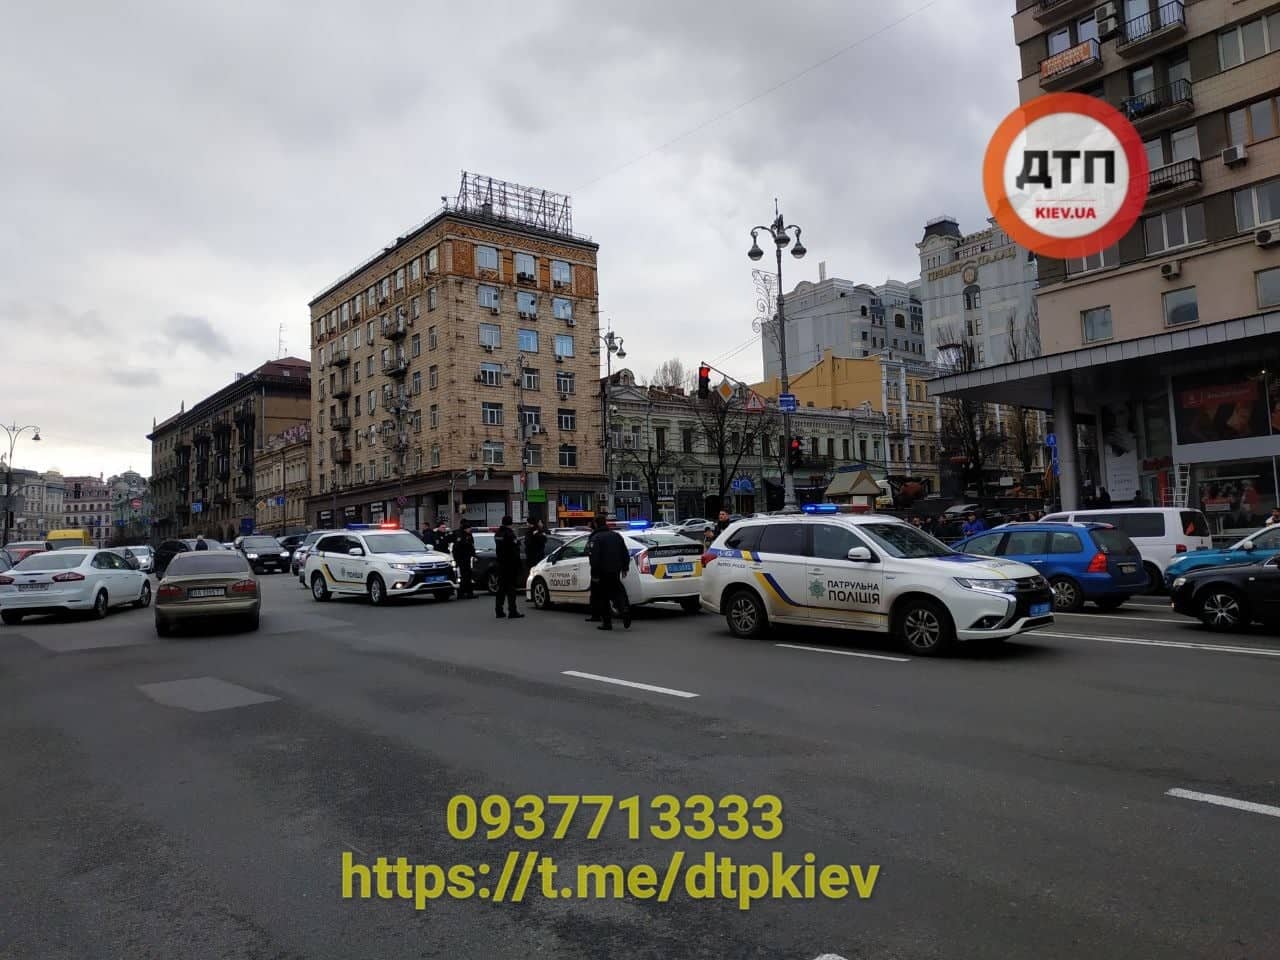 Задержание и ДТП с патрульными в центре Киева: полное видео погони за Mazda без номеров